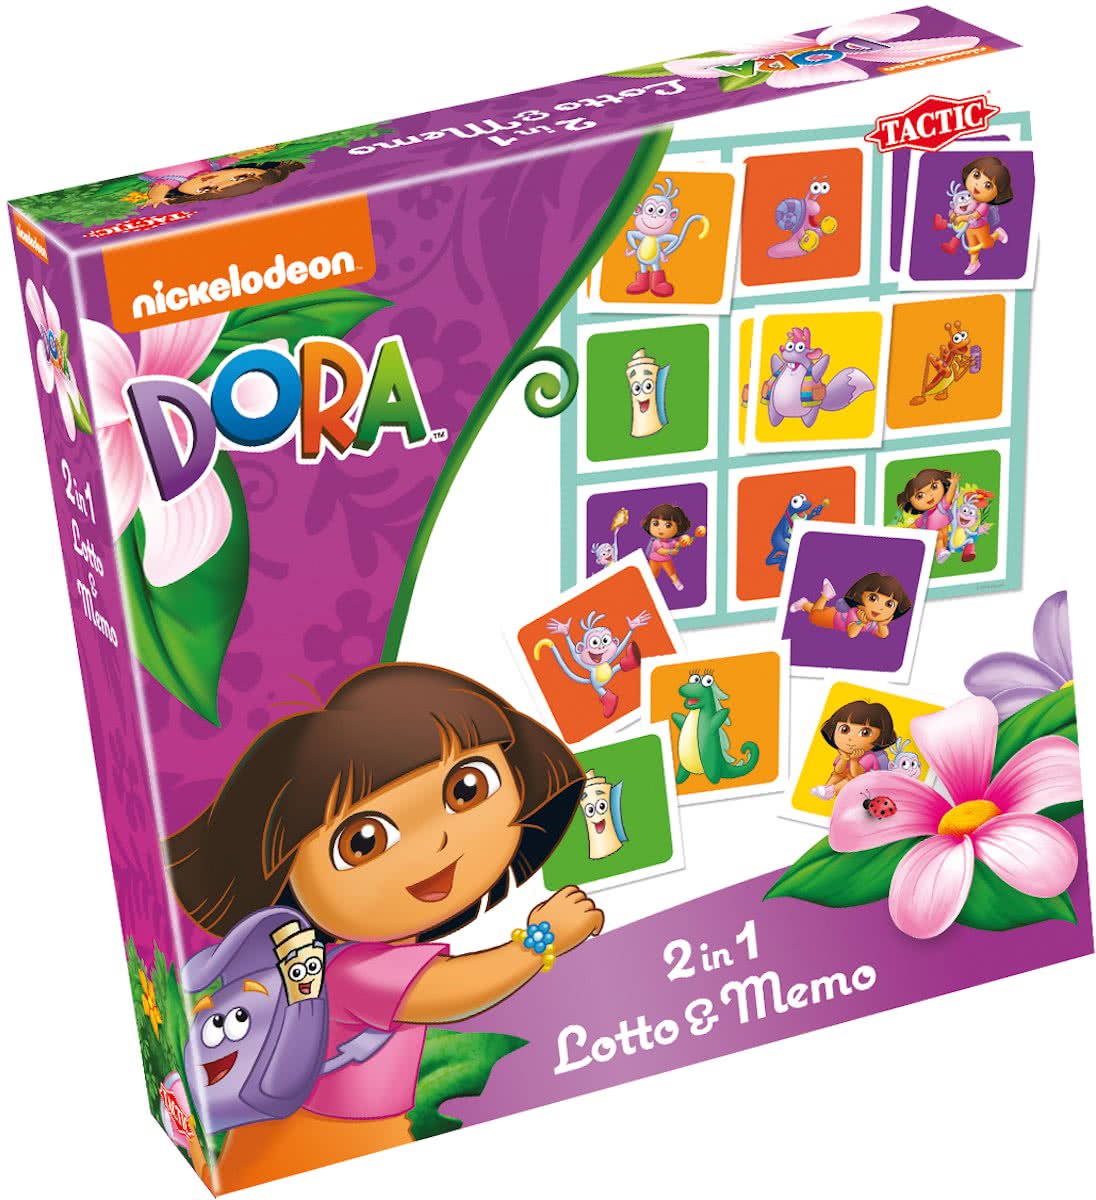 Dora 2in1 Lotto&Memo